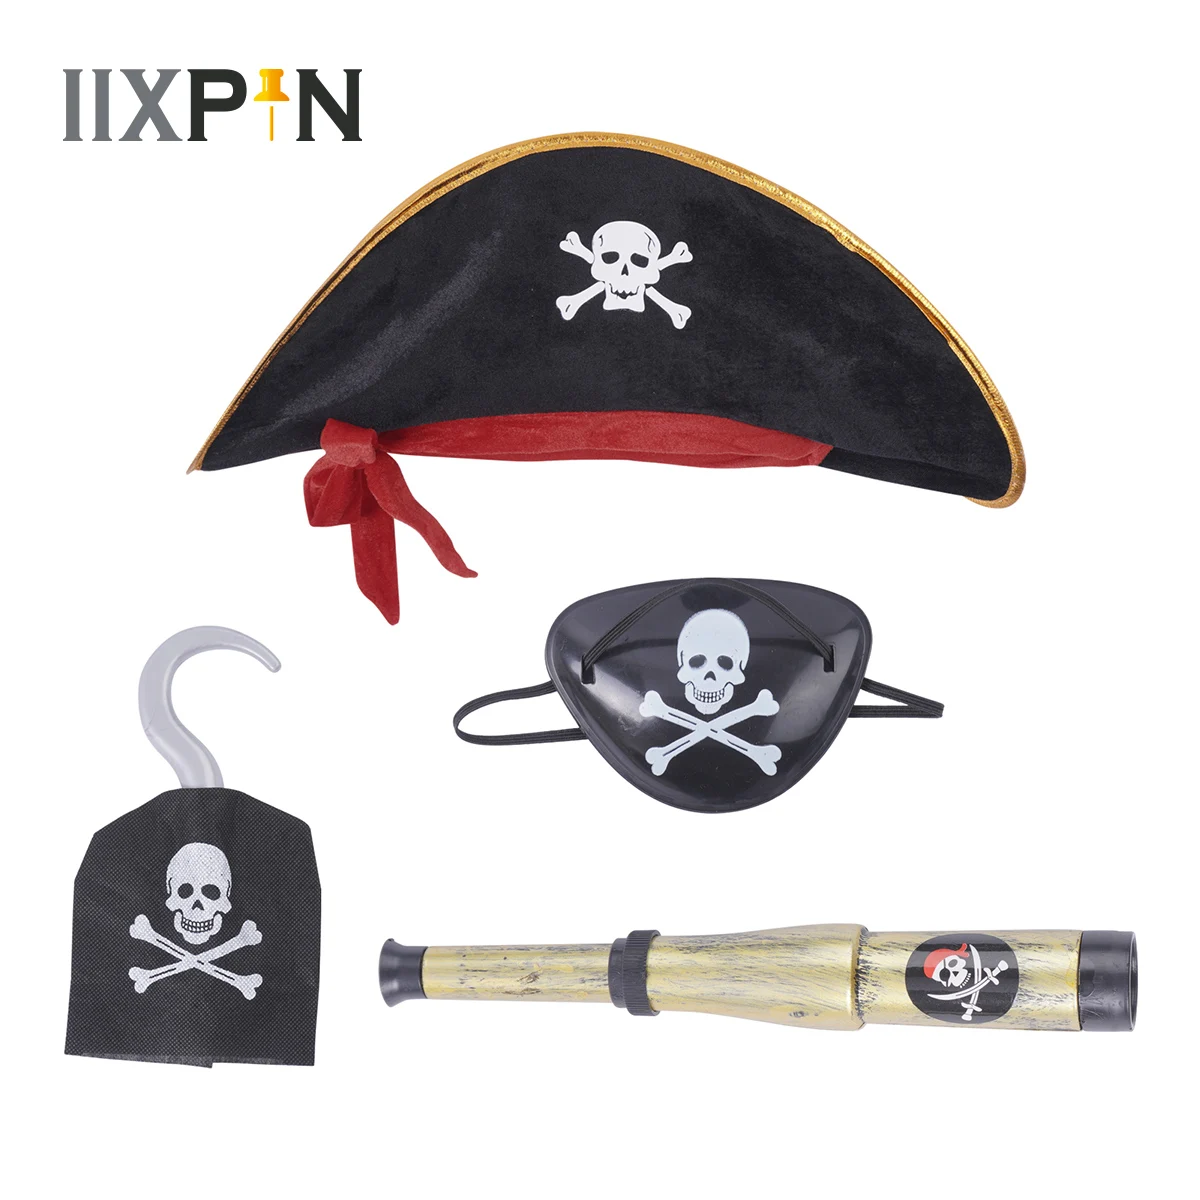  9 piezas de accesorios para disfraz de capitán pirata, incluye  3 piezas de sombrero de pirata con estampado de calavera, gorra de disfraz  de capitán pirata y 6 parches para ojos